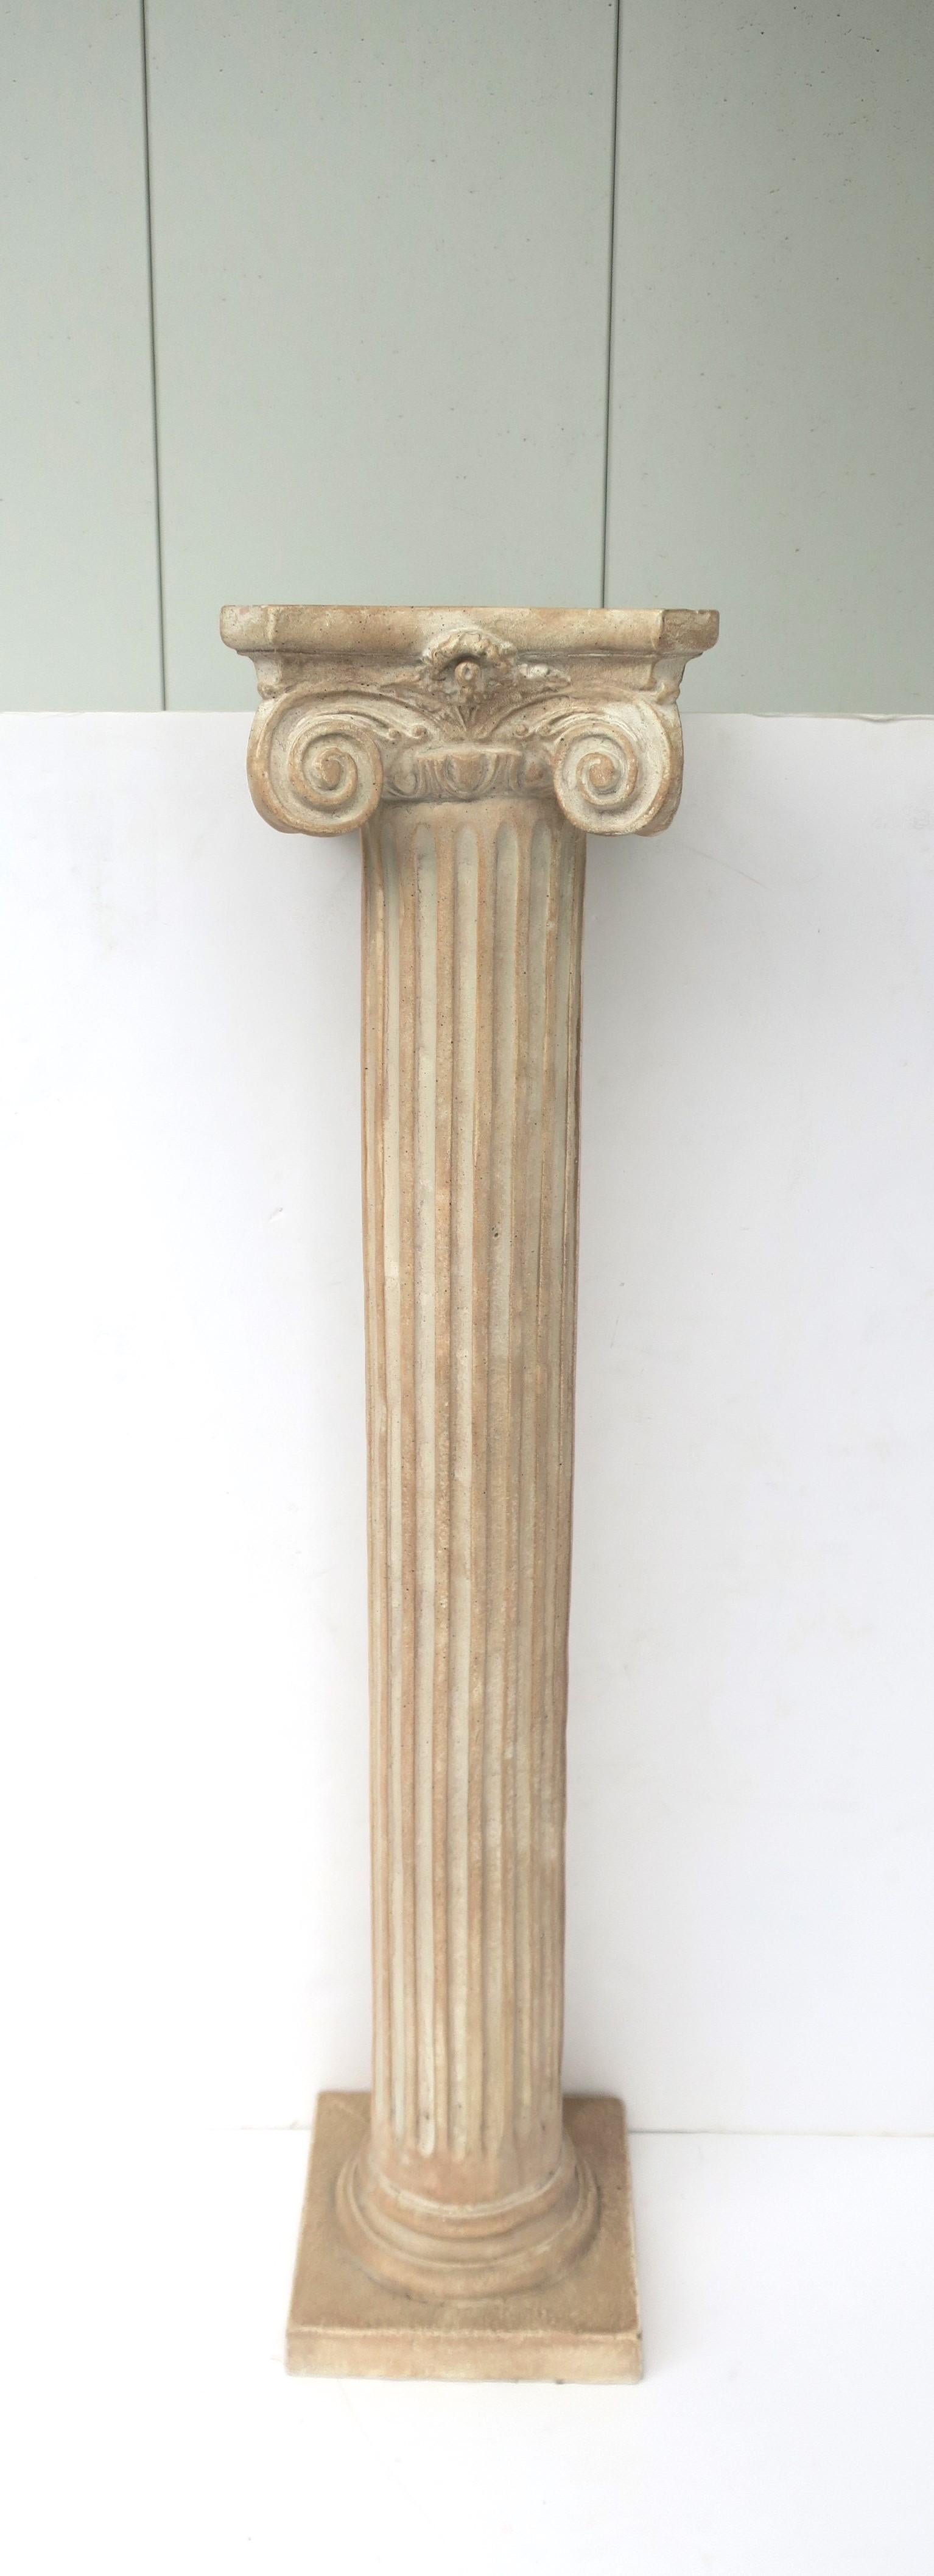 Ionischer Säulensockel mit kannelierter Säule und quadratischem Sockel im neoklassizistischen griechisch-römischen Stil, um Ende des 20. Jahrhunderts, 1982. Die Säule hat ein angenehmes Gewicht; sie ist aus einem steinähnlichen MATERIAL gefertigt.